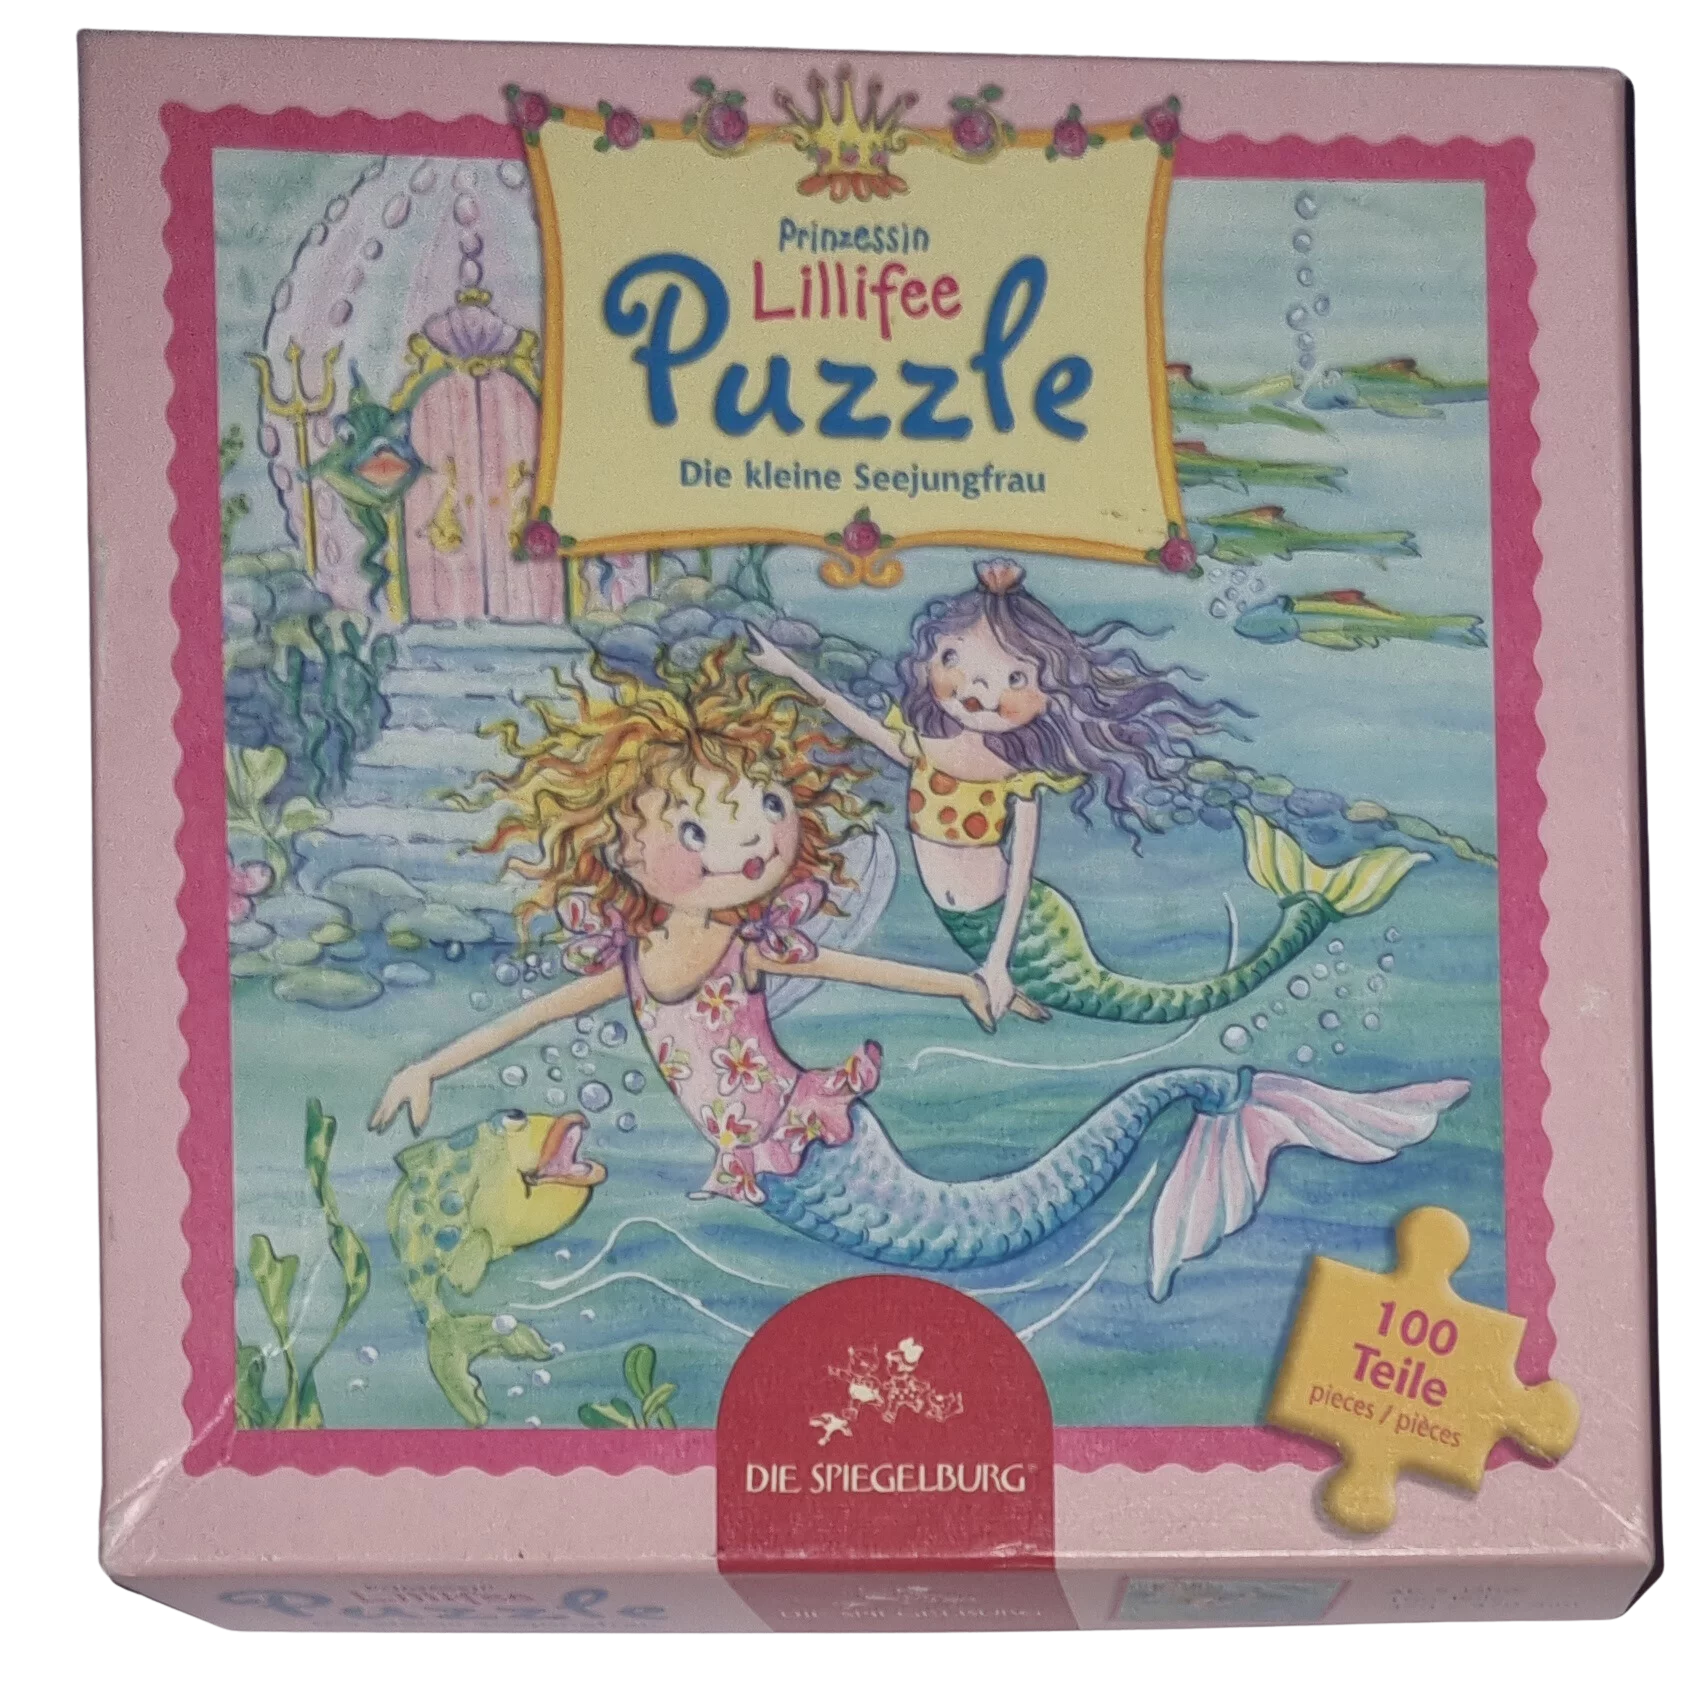 Die Spiegelburg Prinzesssin Lillifee Puzzle 100 Teile Die kleine Seejungfrau